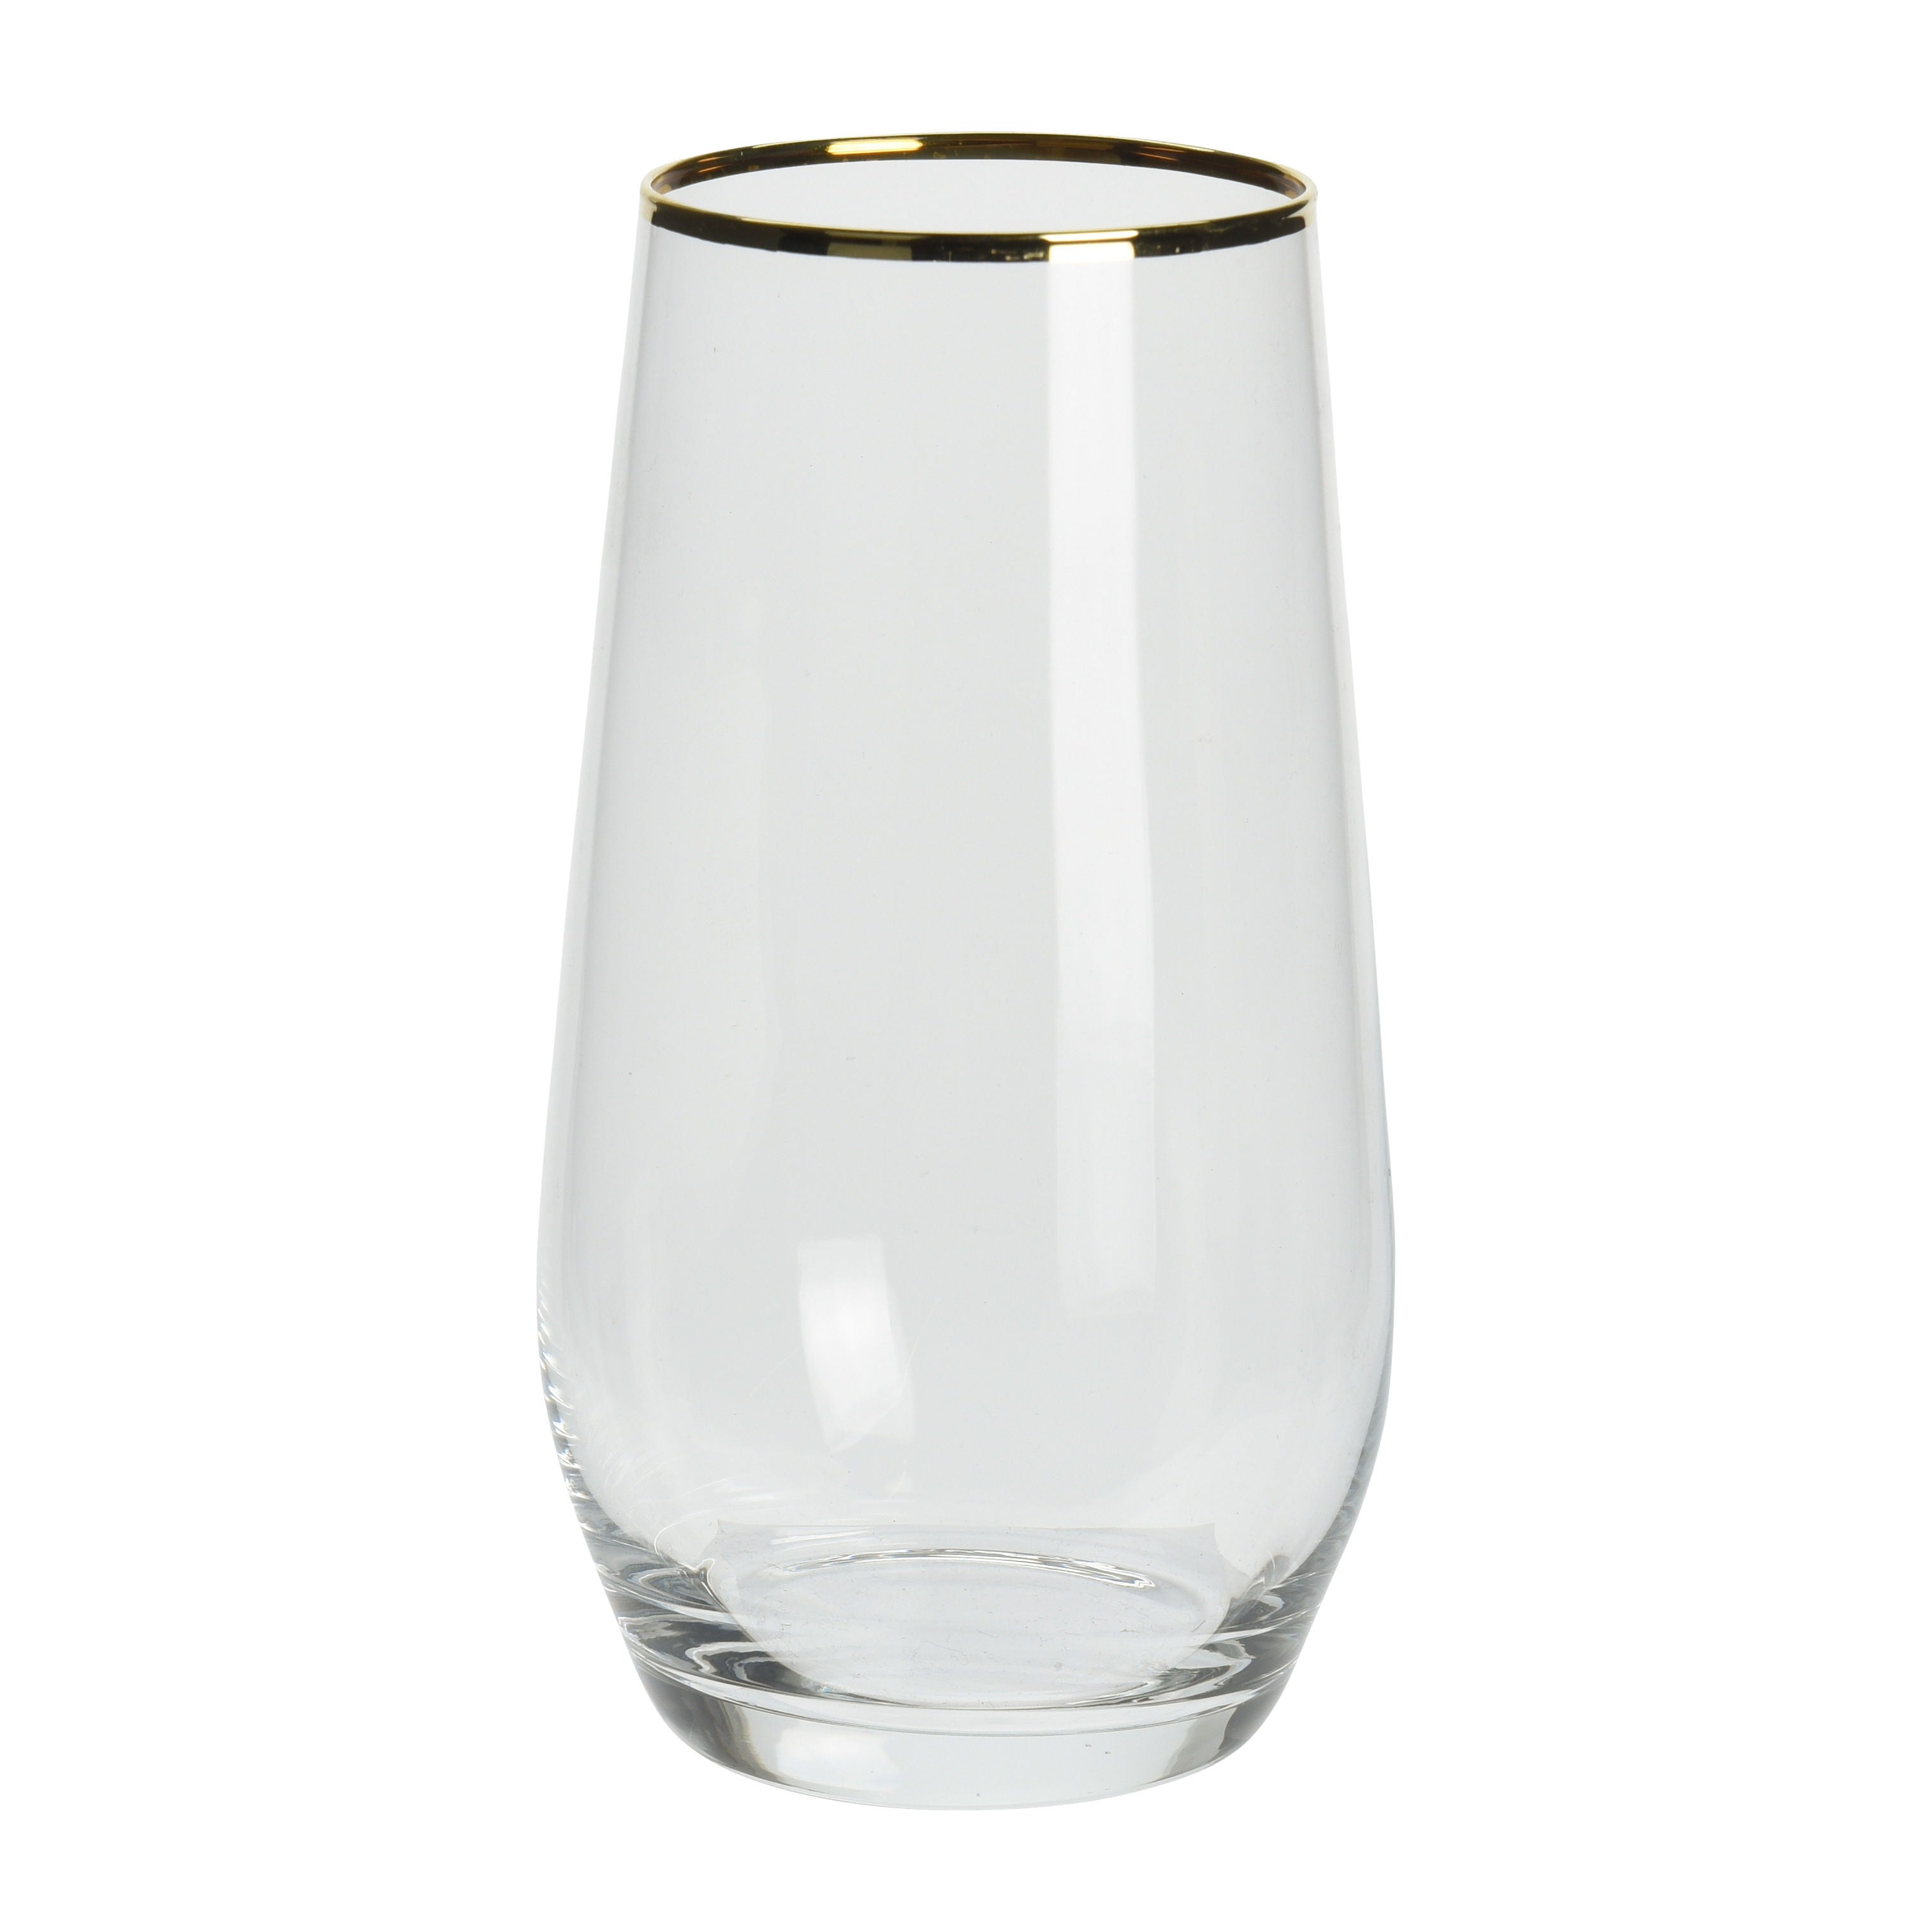 Pahar pentru apa / suc, SR3000130, din sticla, transparent + auriu, 390 ml